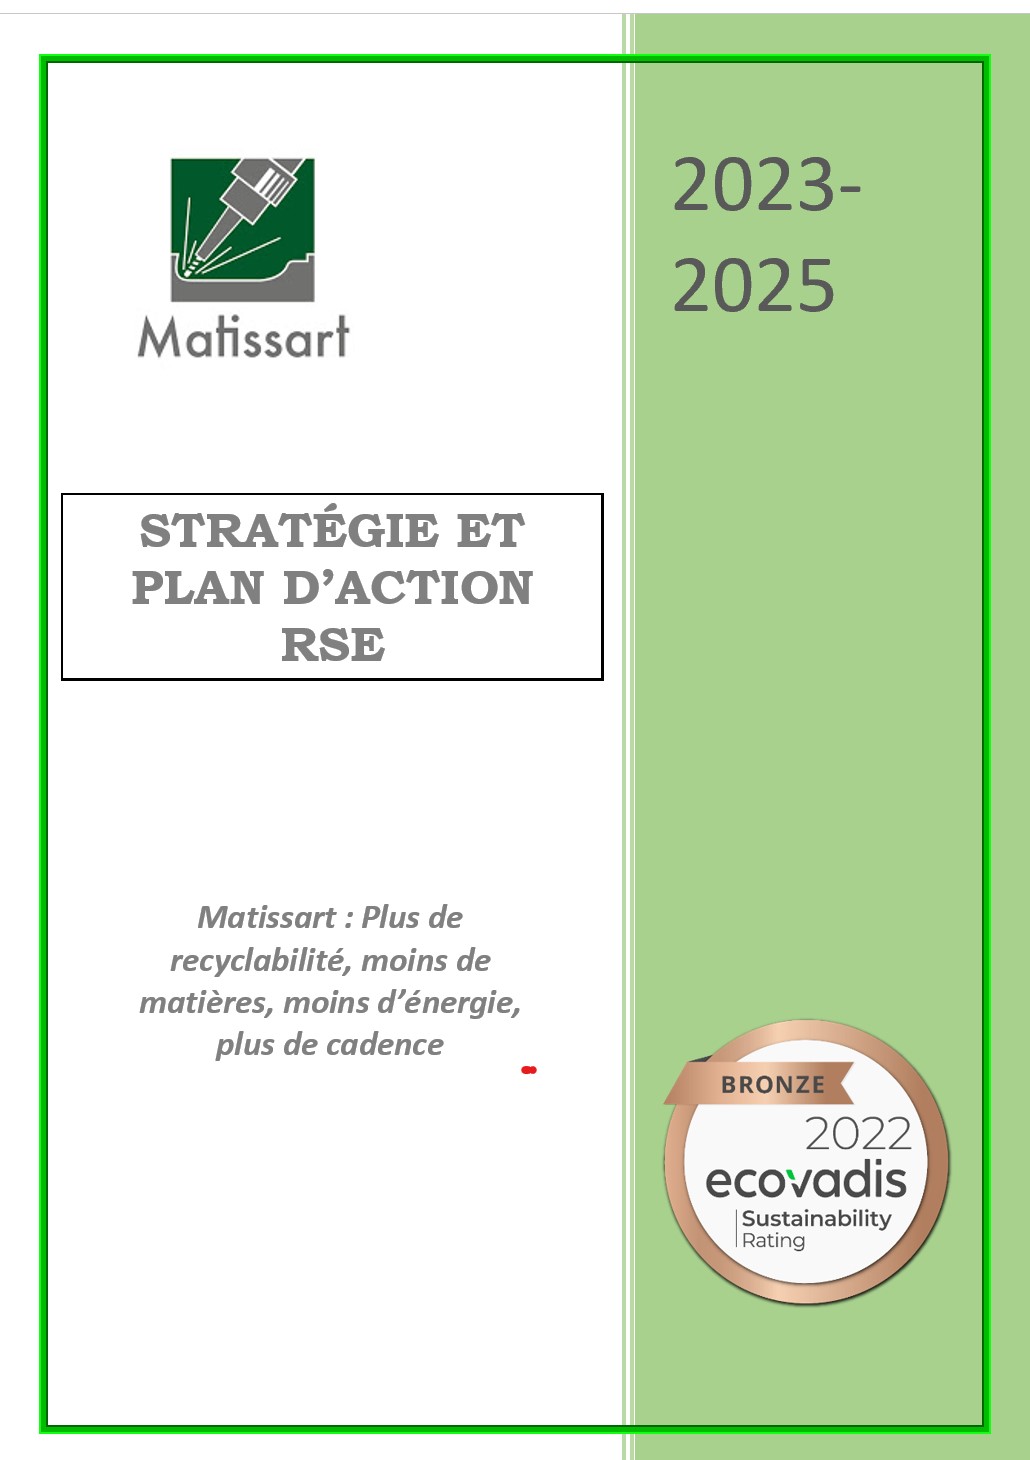 Image de la première de couverture du plan d'action RSE et stratégie MATISSART pour les années 2023 à 2025